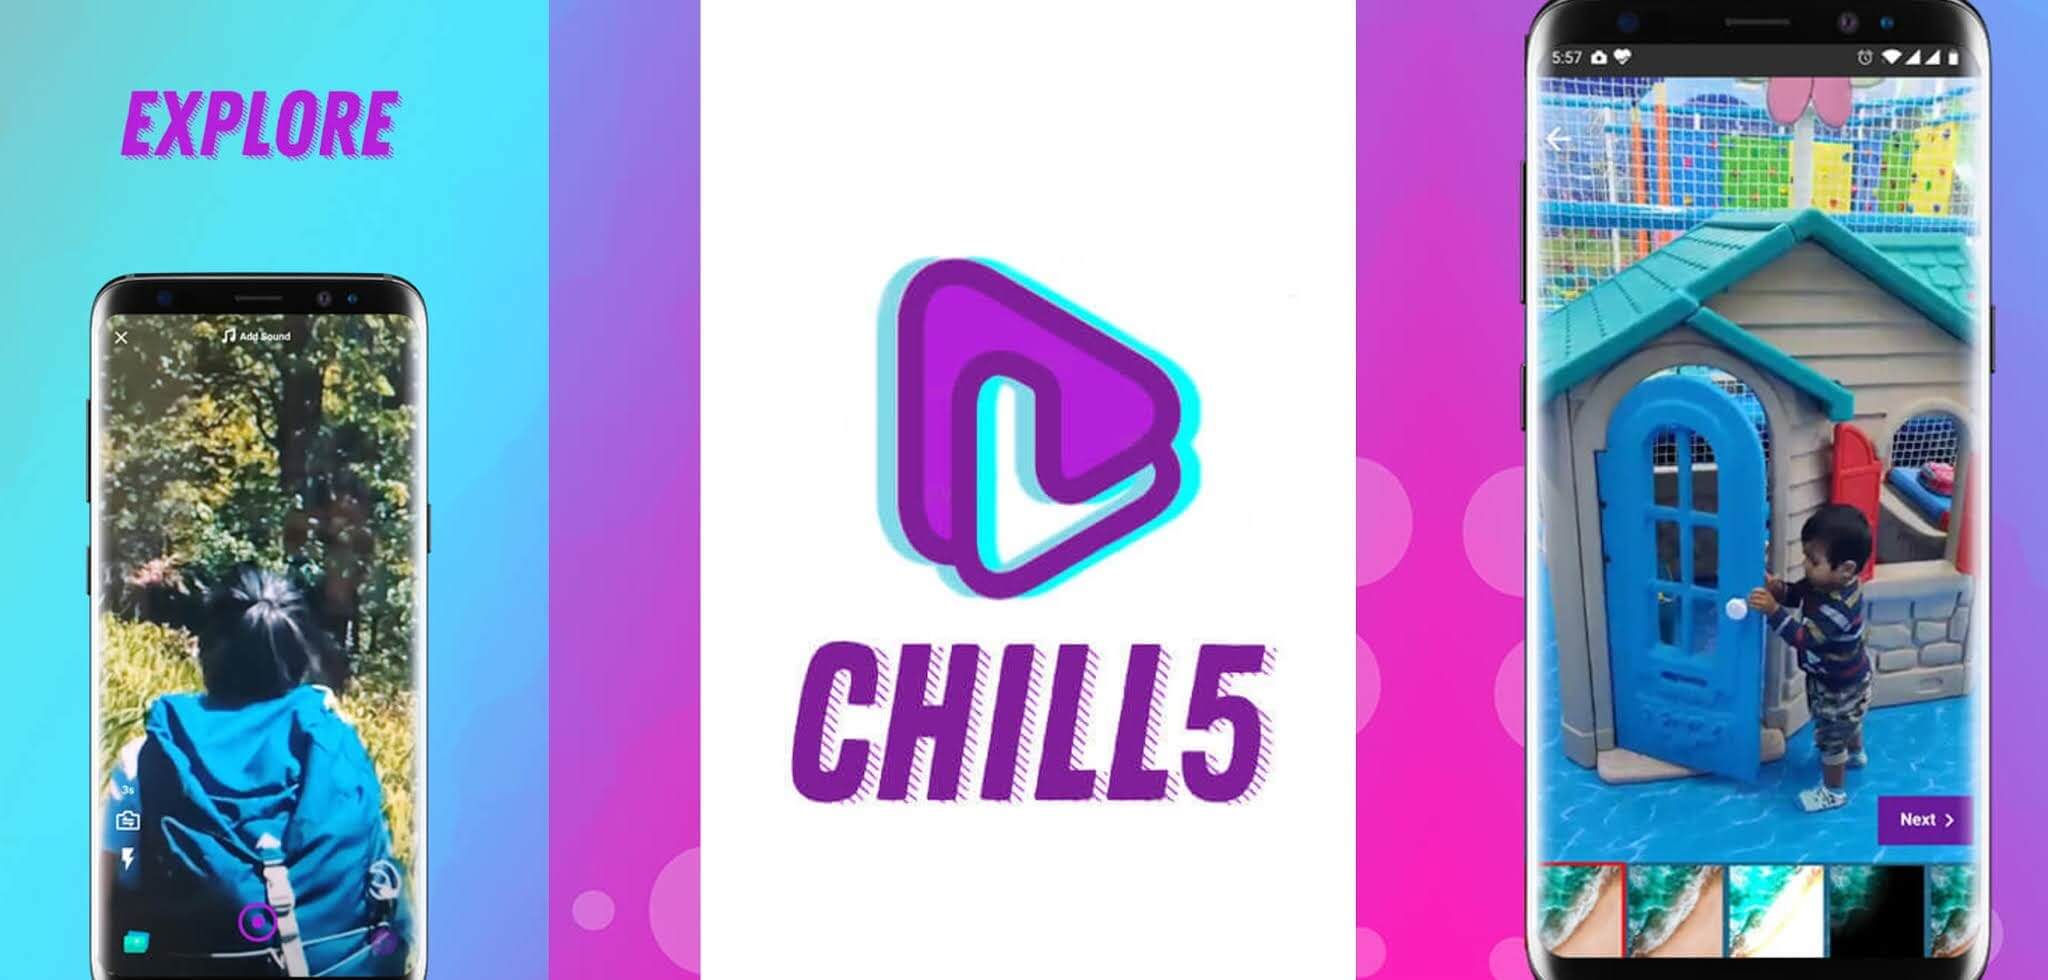 Chill5 App